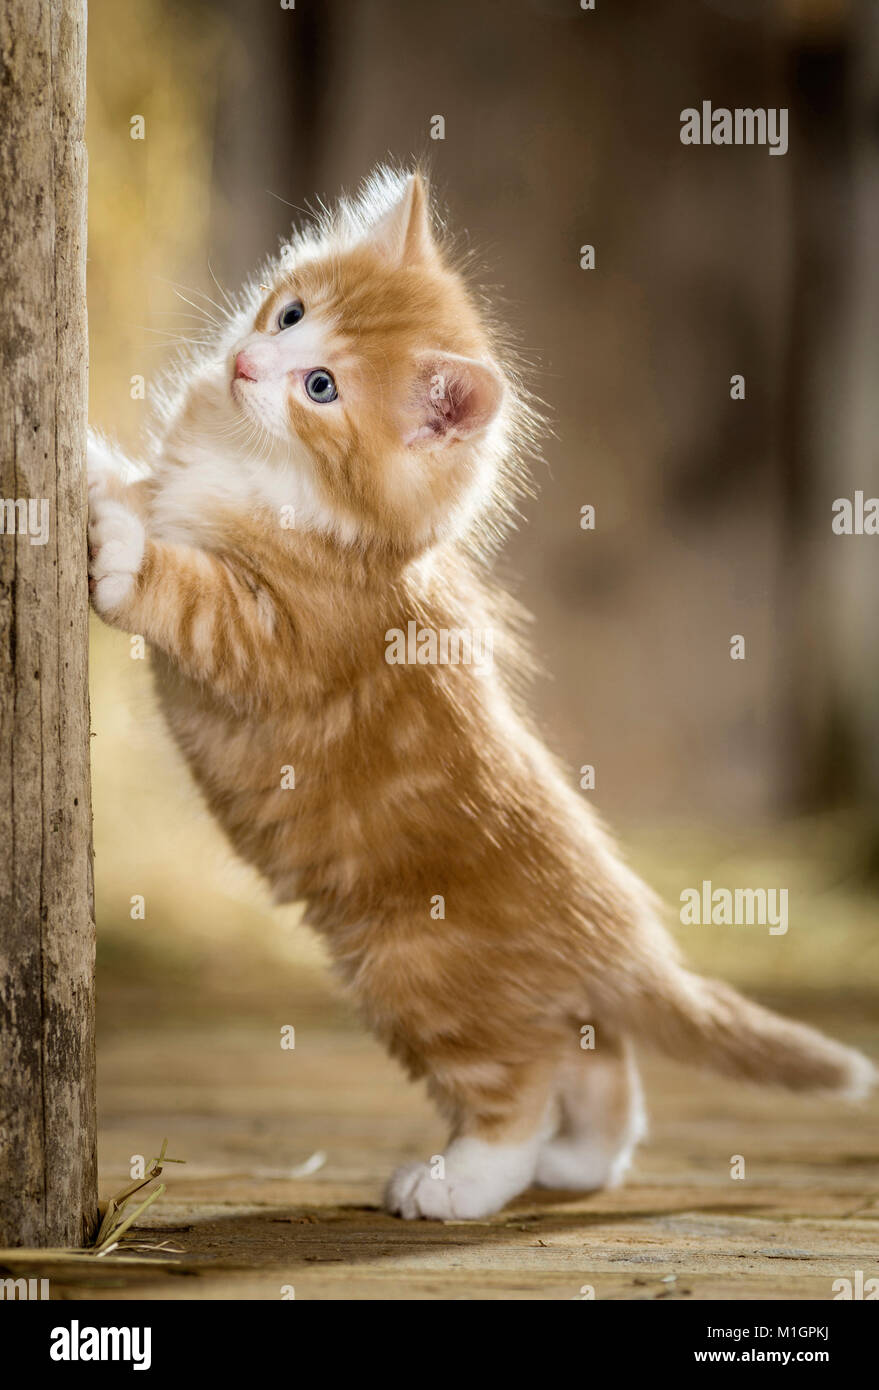 Norwegian Forest cat. Chaton dans une grange, debout à une poutre en bois. Allemagne Banque D'Images